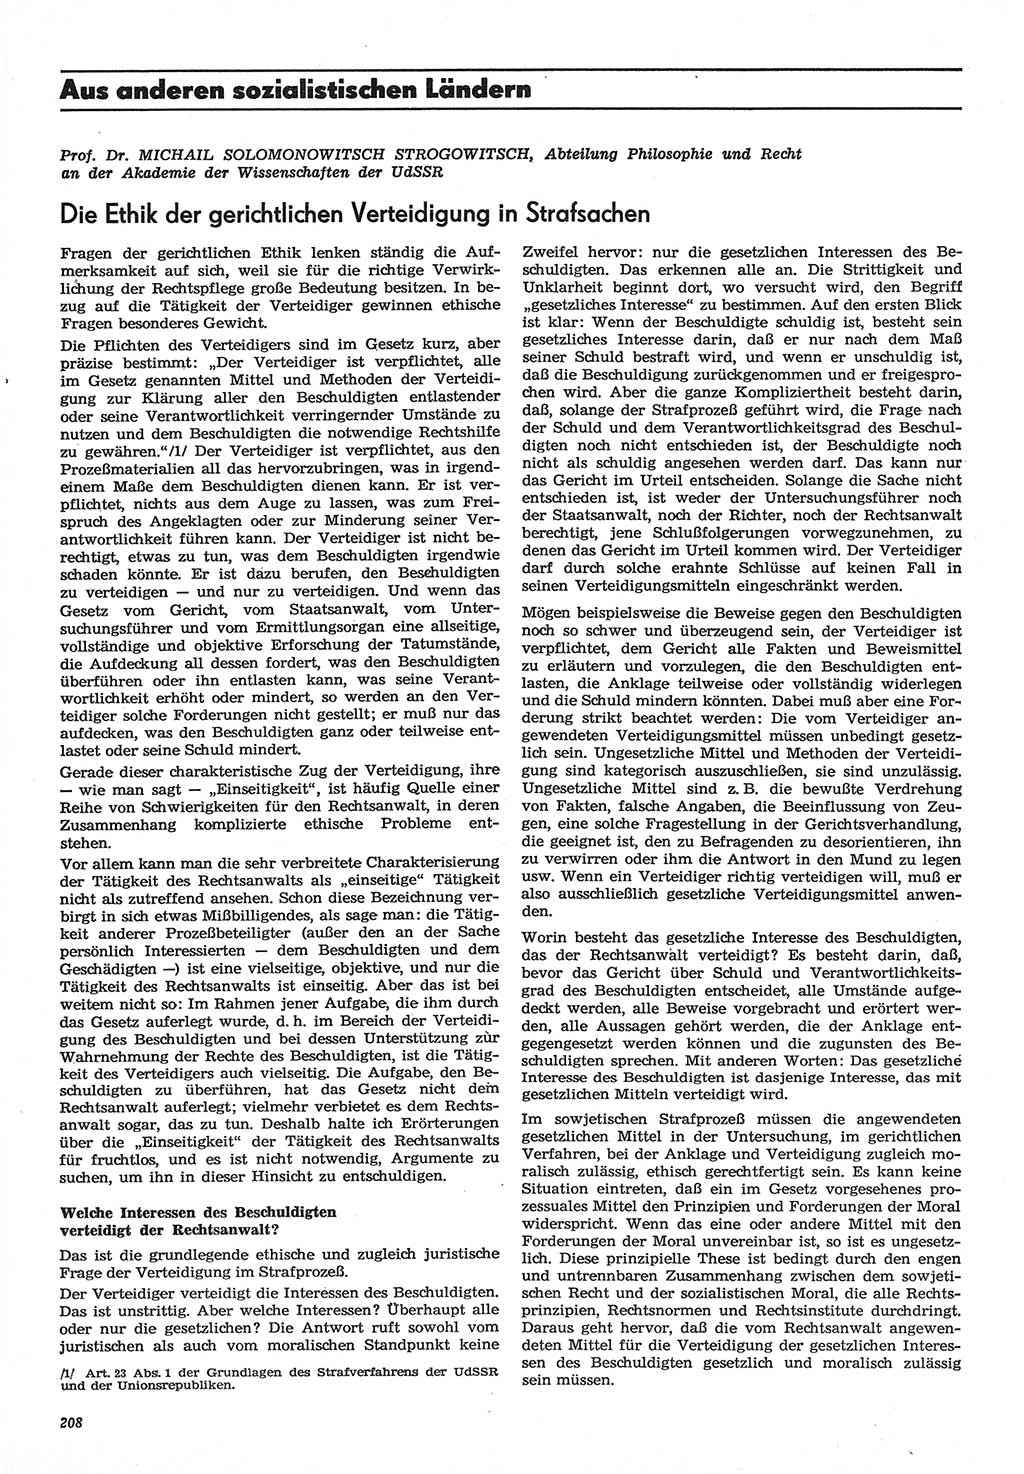 Neue Justiz (NJ), Zeitschrift für Recht und Rechtswissenschaft-Zeitschrift, sozialistisches Recht und Gesetzlichkeit, 31. Jahrgang 1977, Seite 208 (NJ DDR 1977, S. 208)